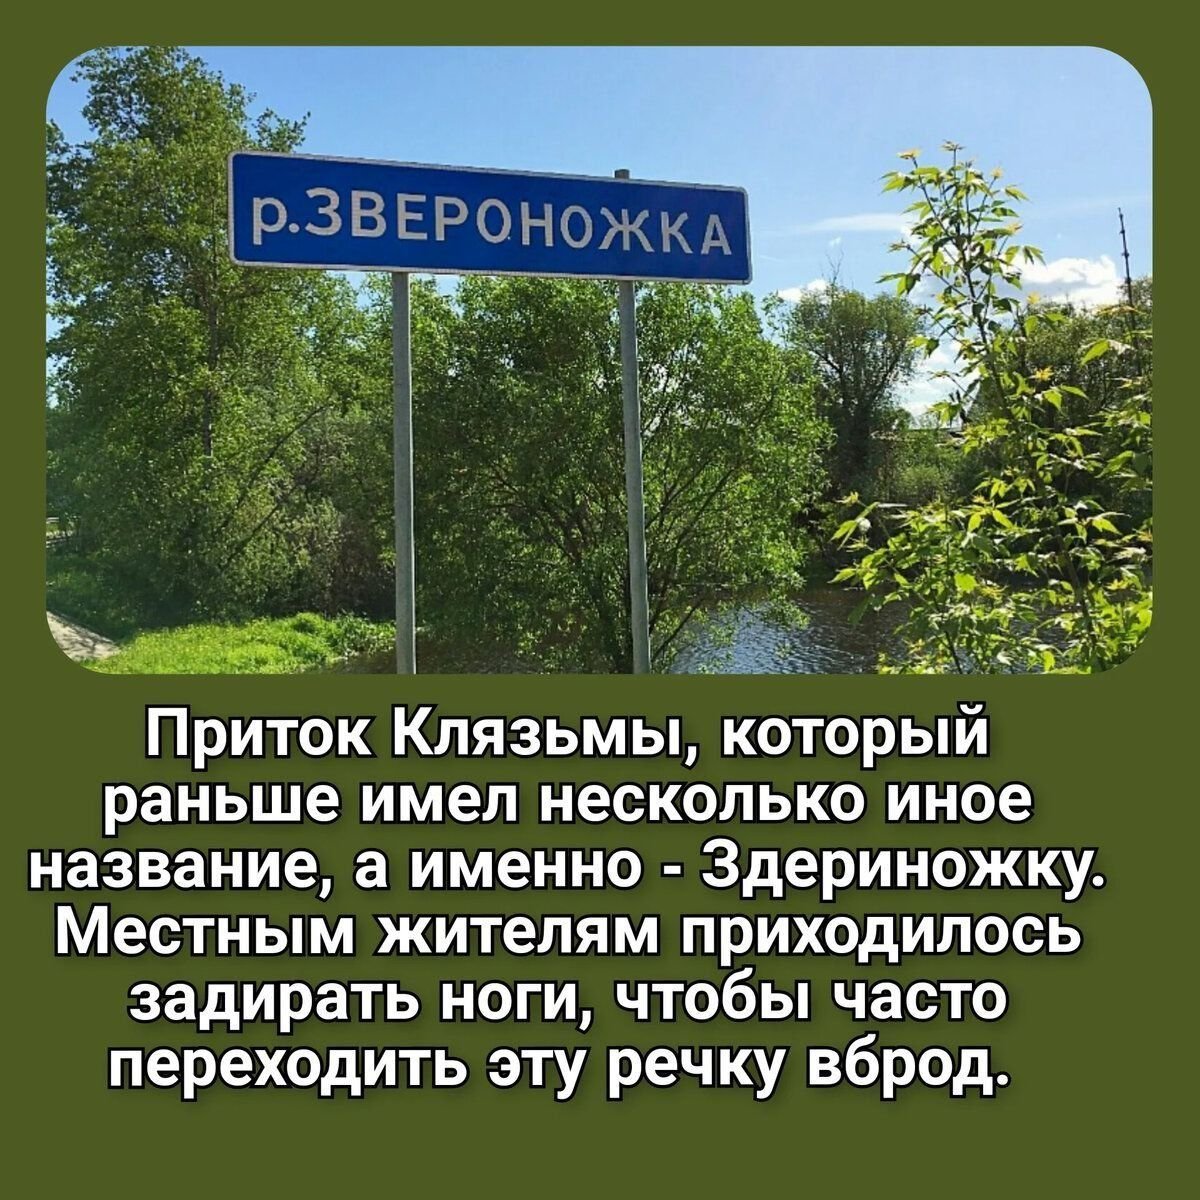 Название рек россии на букву в